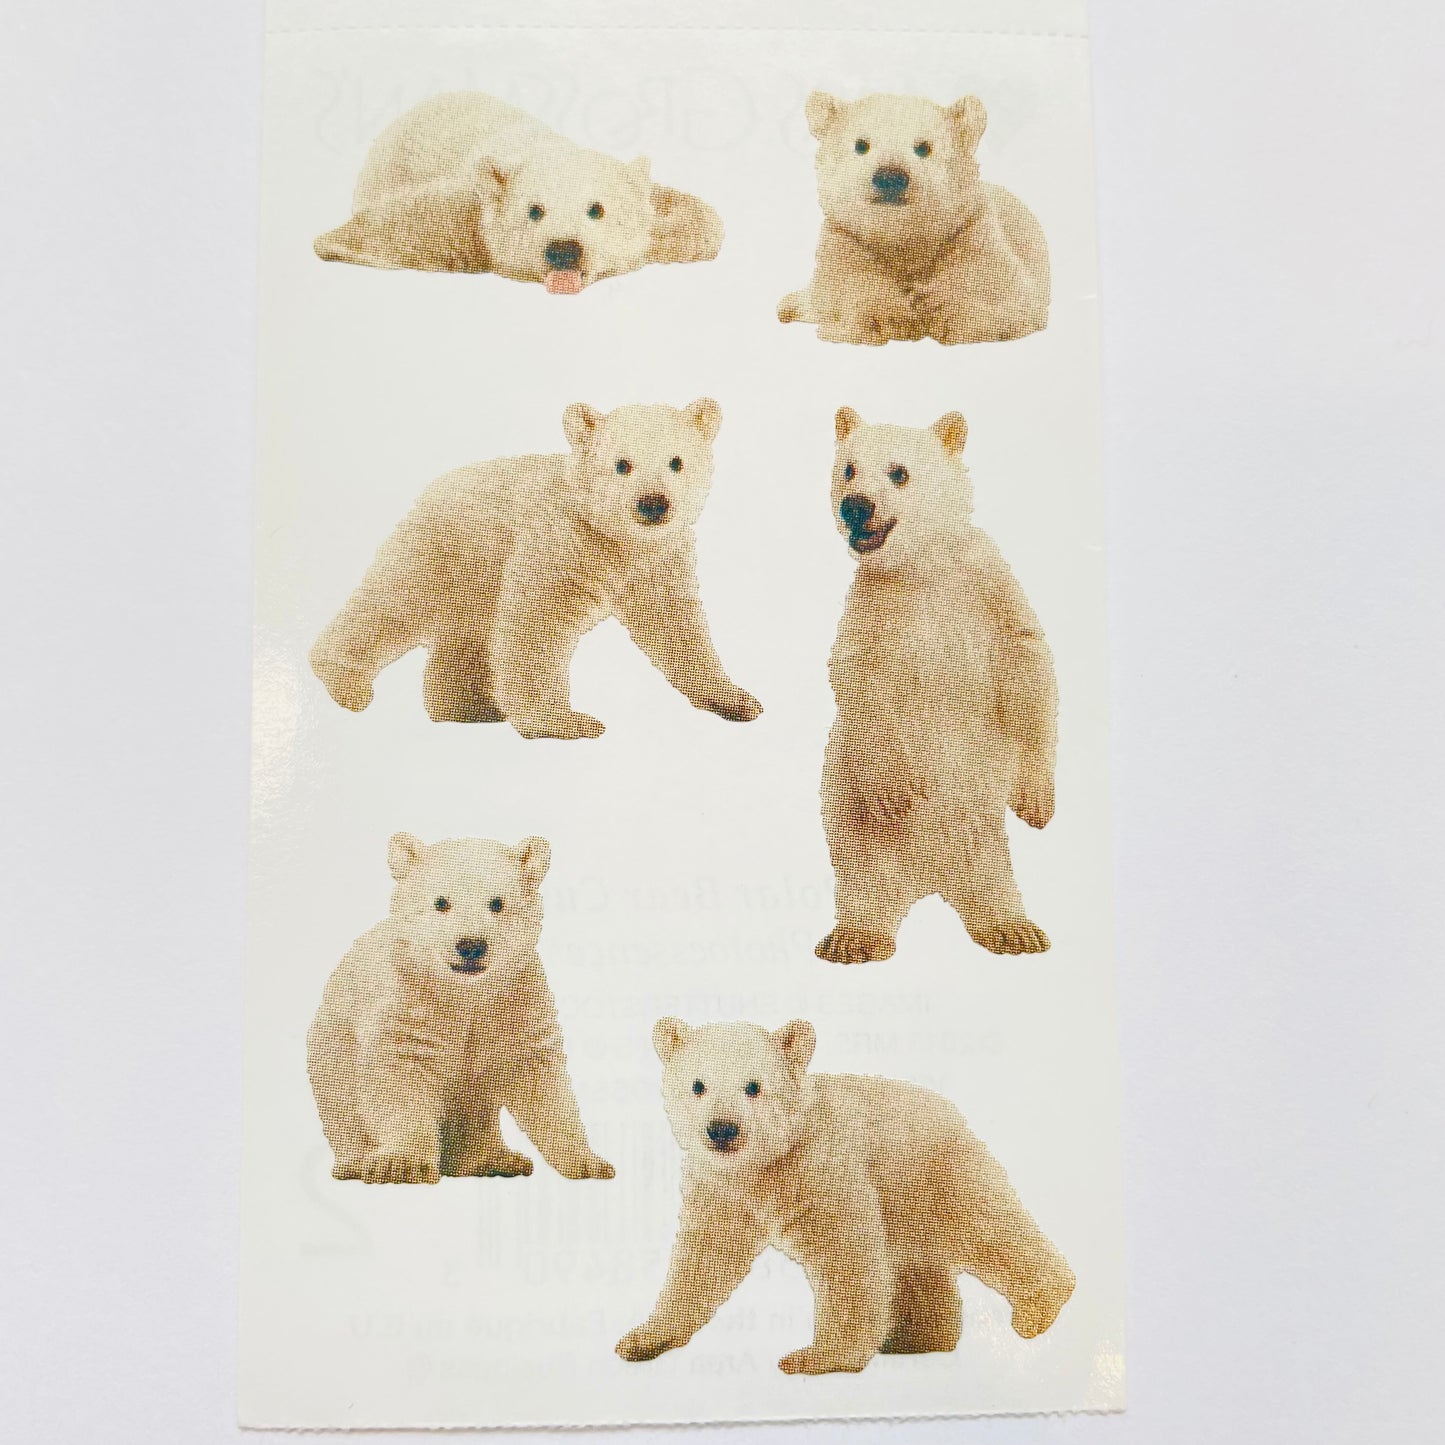 Mrs. Grossman's: Polar Bear Cubs Stickers